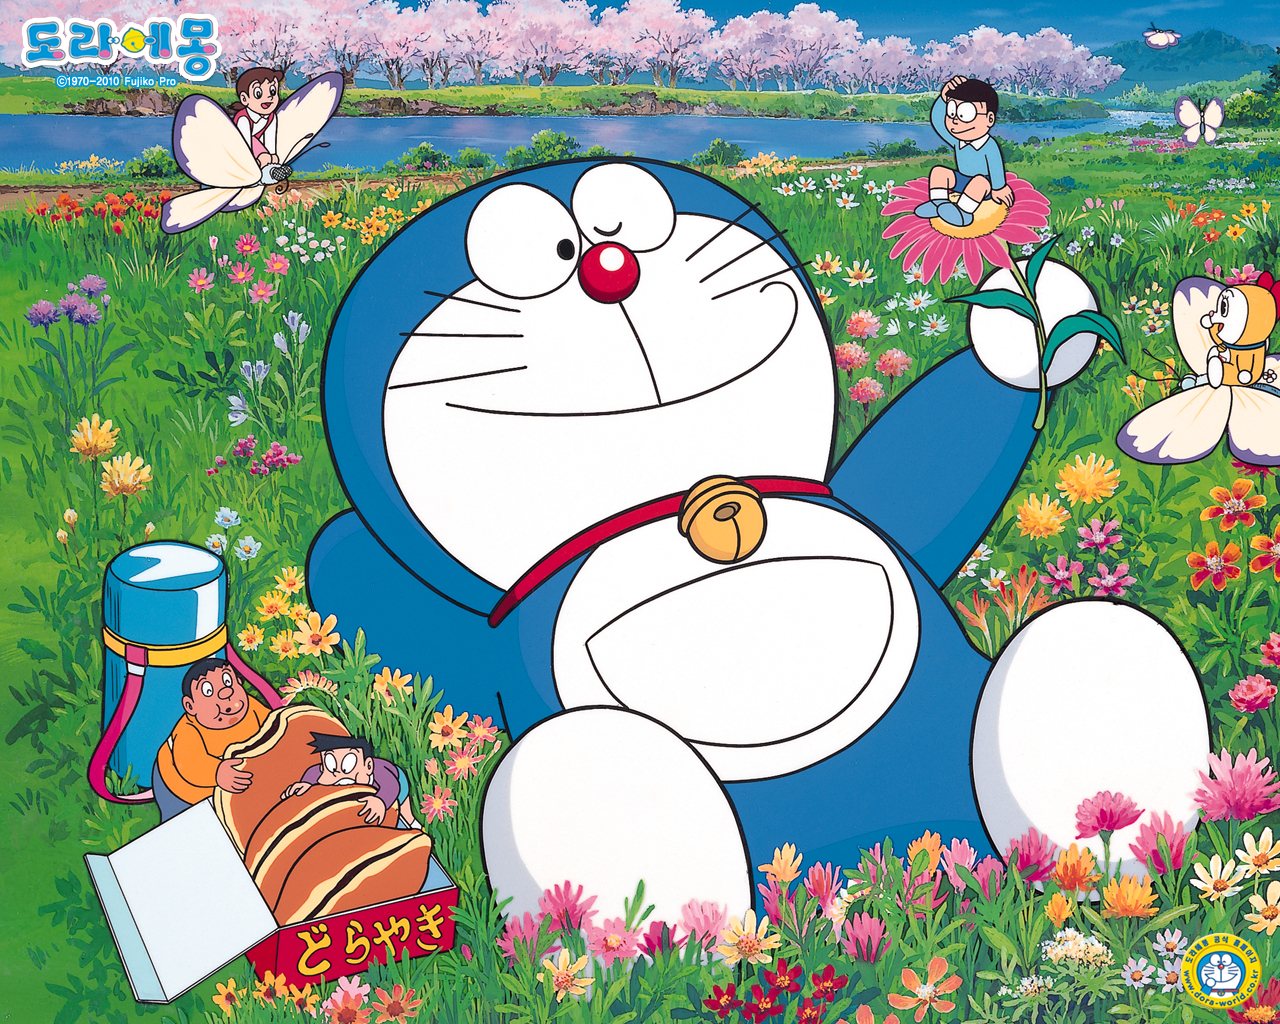 Hình nền Doraemon làm bạn liên tưởng đến những kỷ niệm thần thánh của tuổi thơ đúng không nào? Hãy khám phá bộ sưu tập Doraemon wallpapers đa dạng mà chúng tôi cung cấp để tái hiện lại những khoảnh khắc đáng nhớ đó nhé!